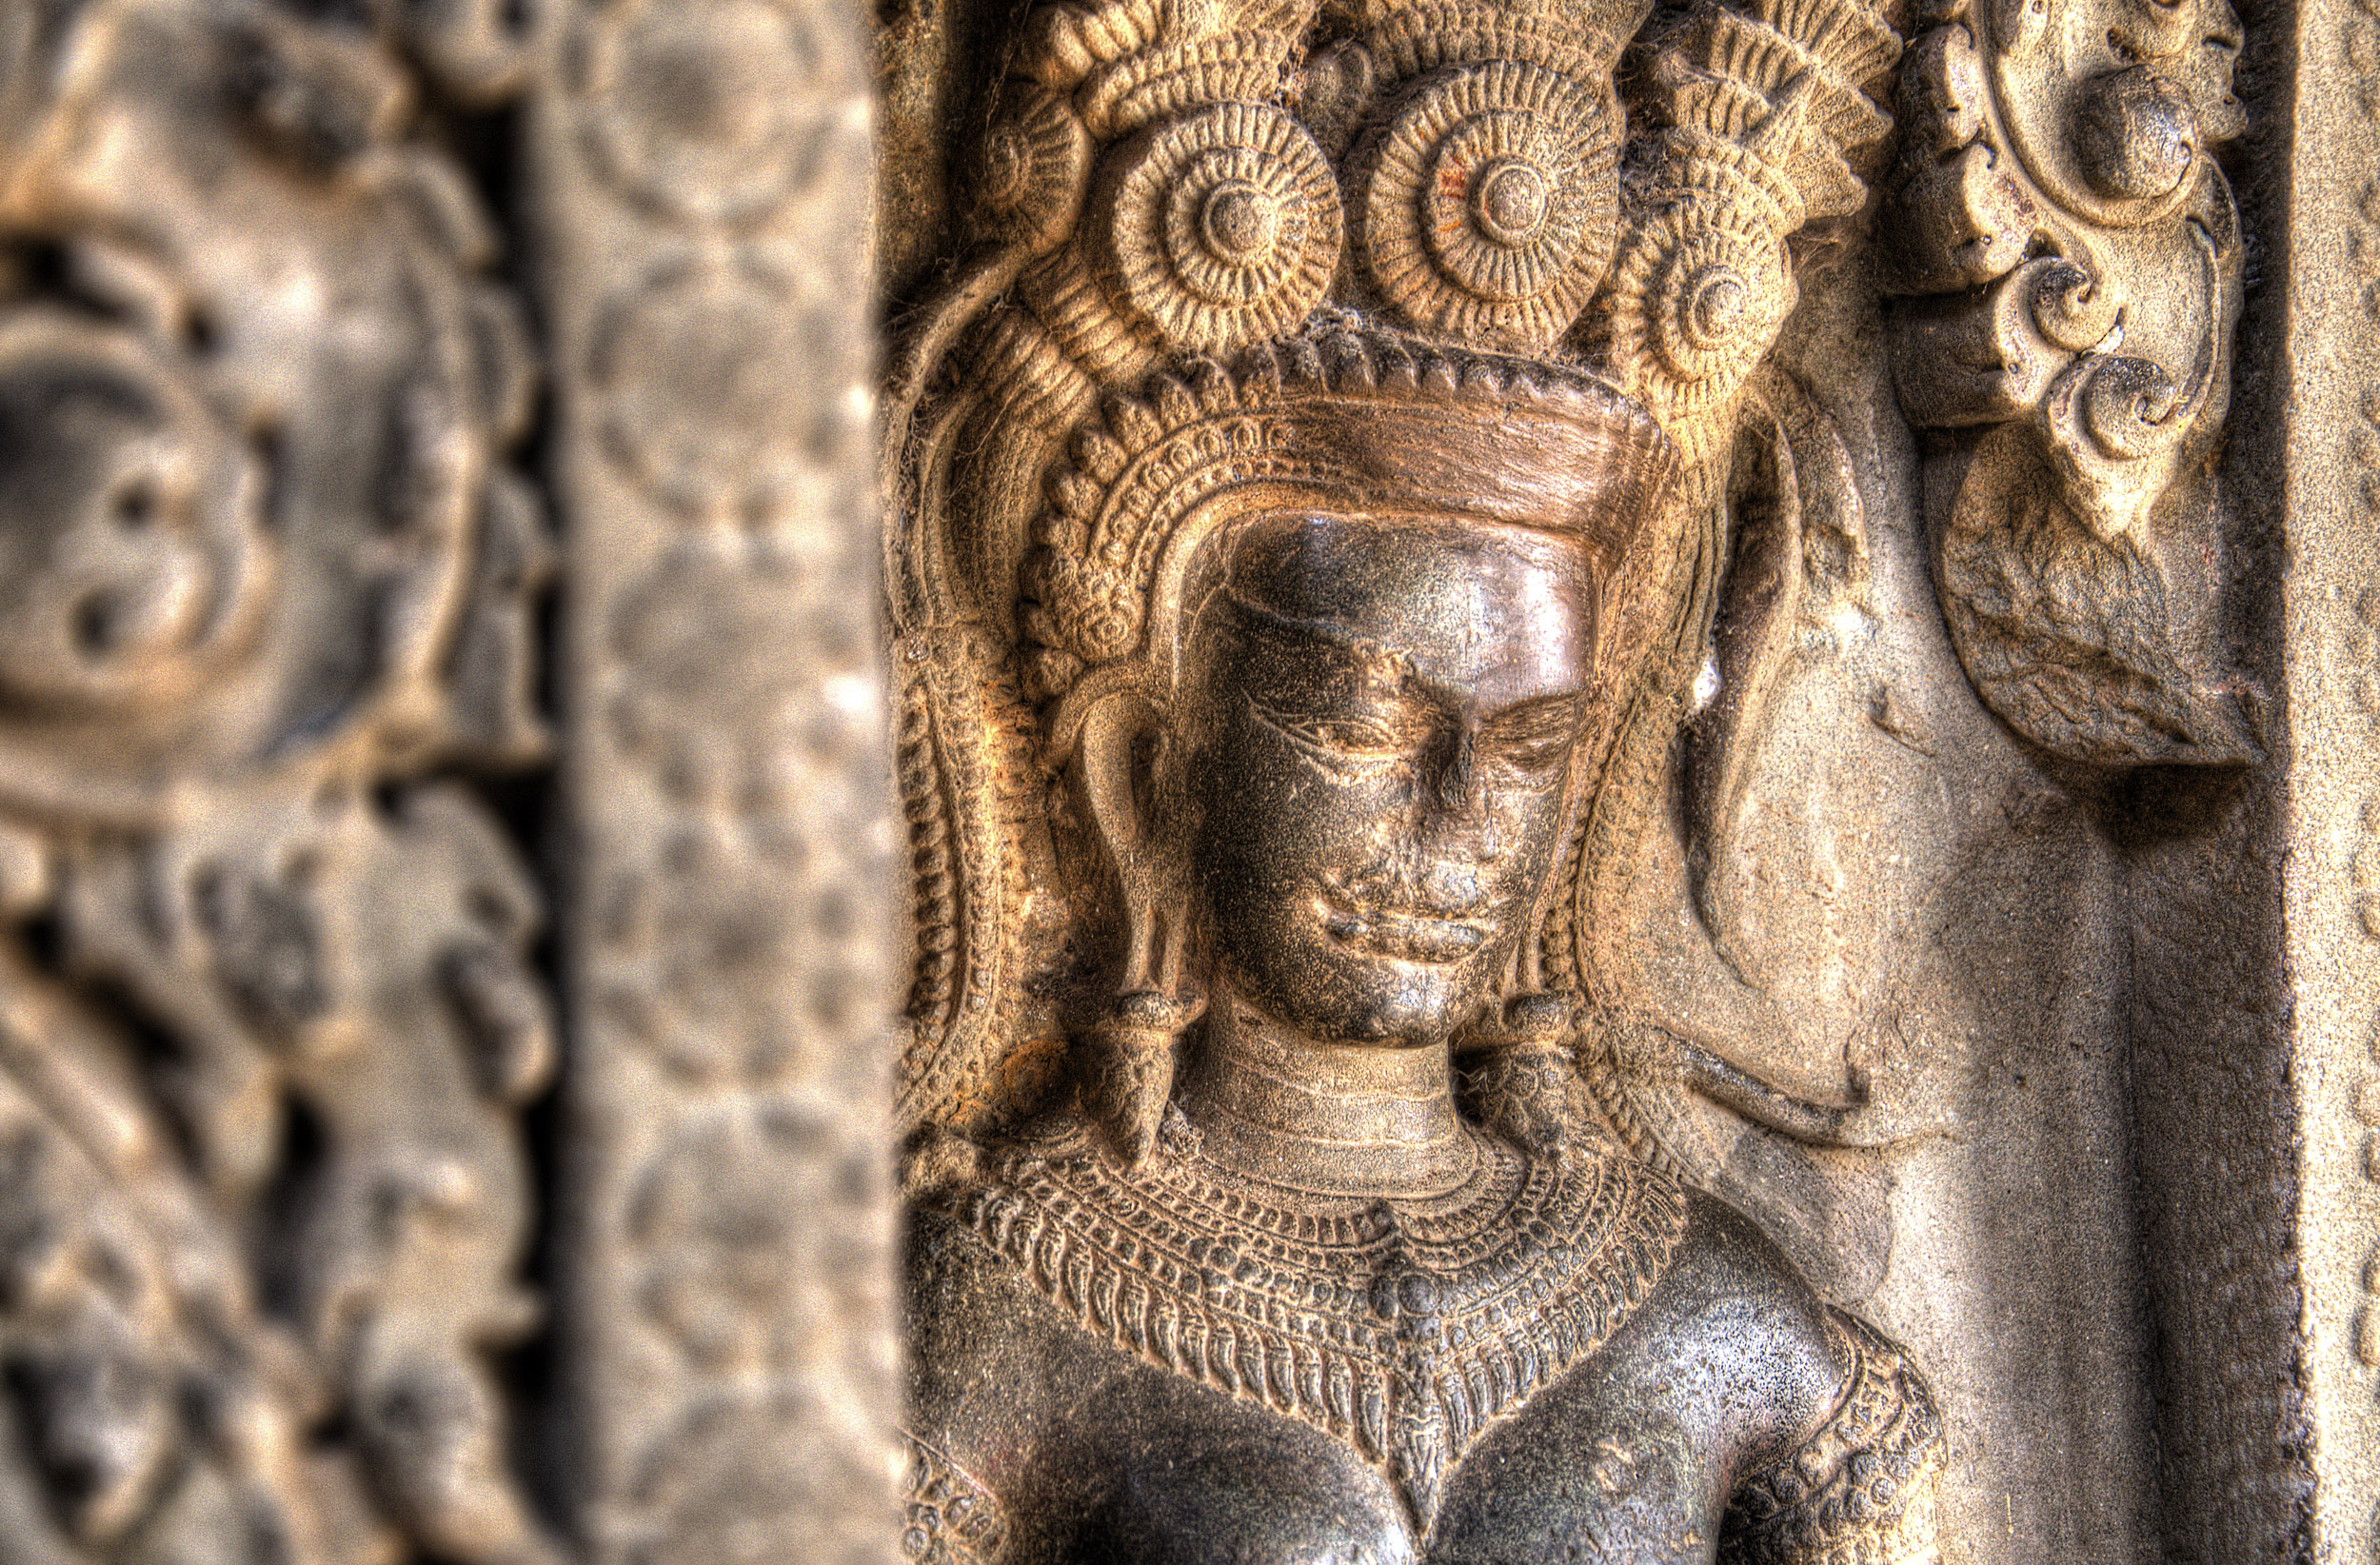 Angel sculpture at Angkor Wat Cambodia